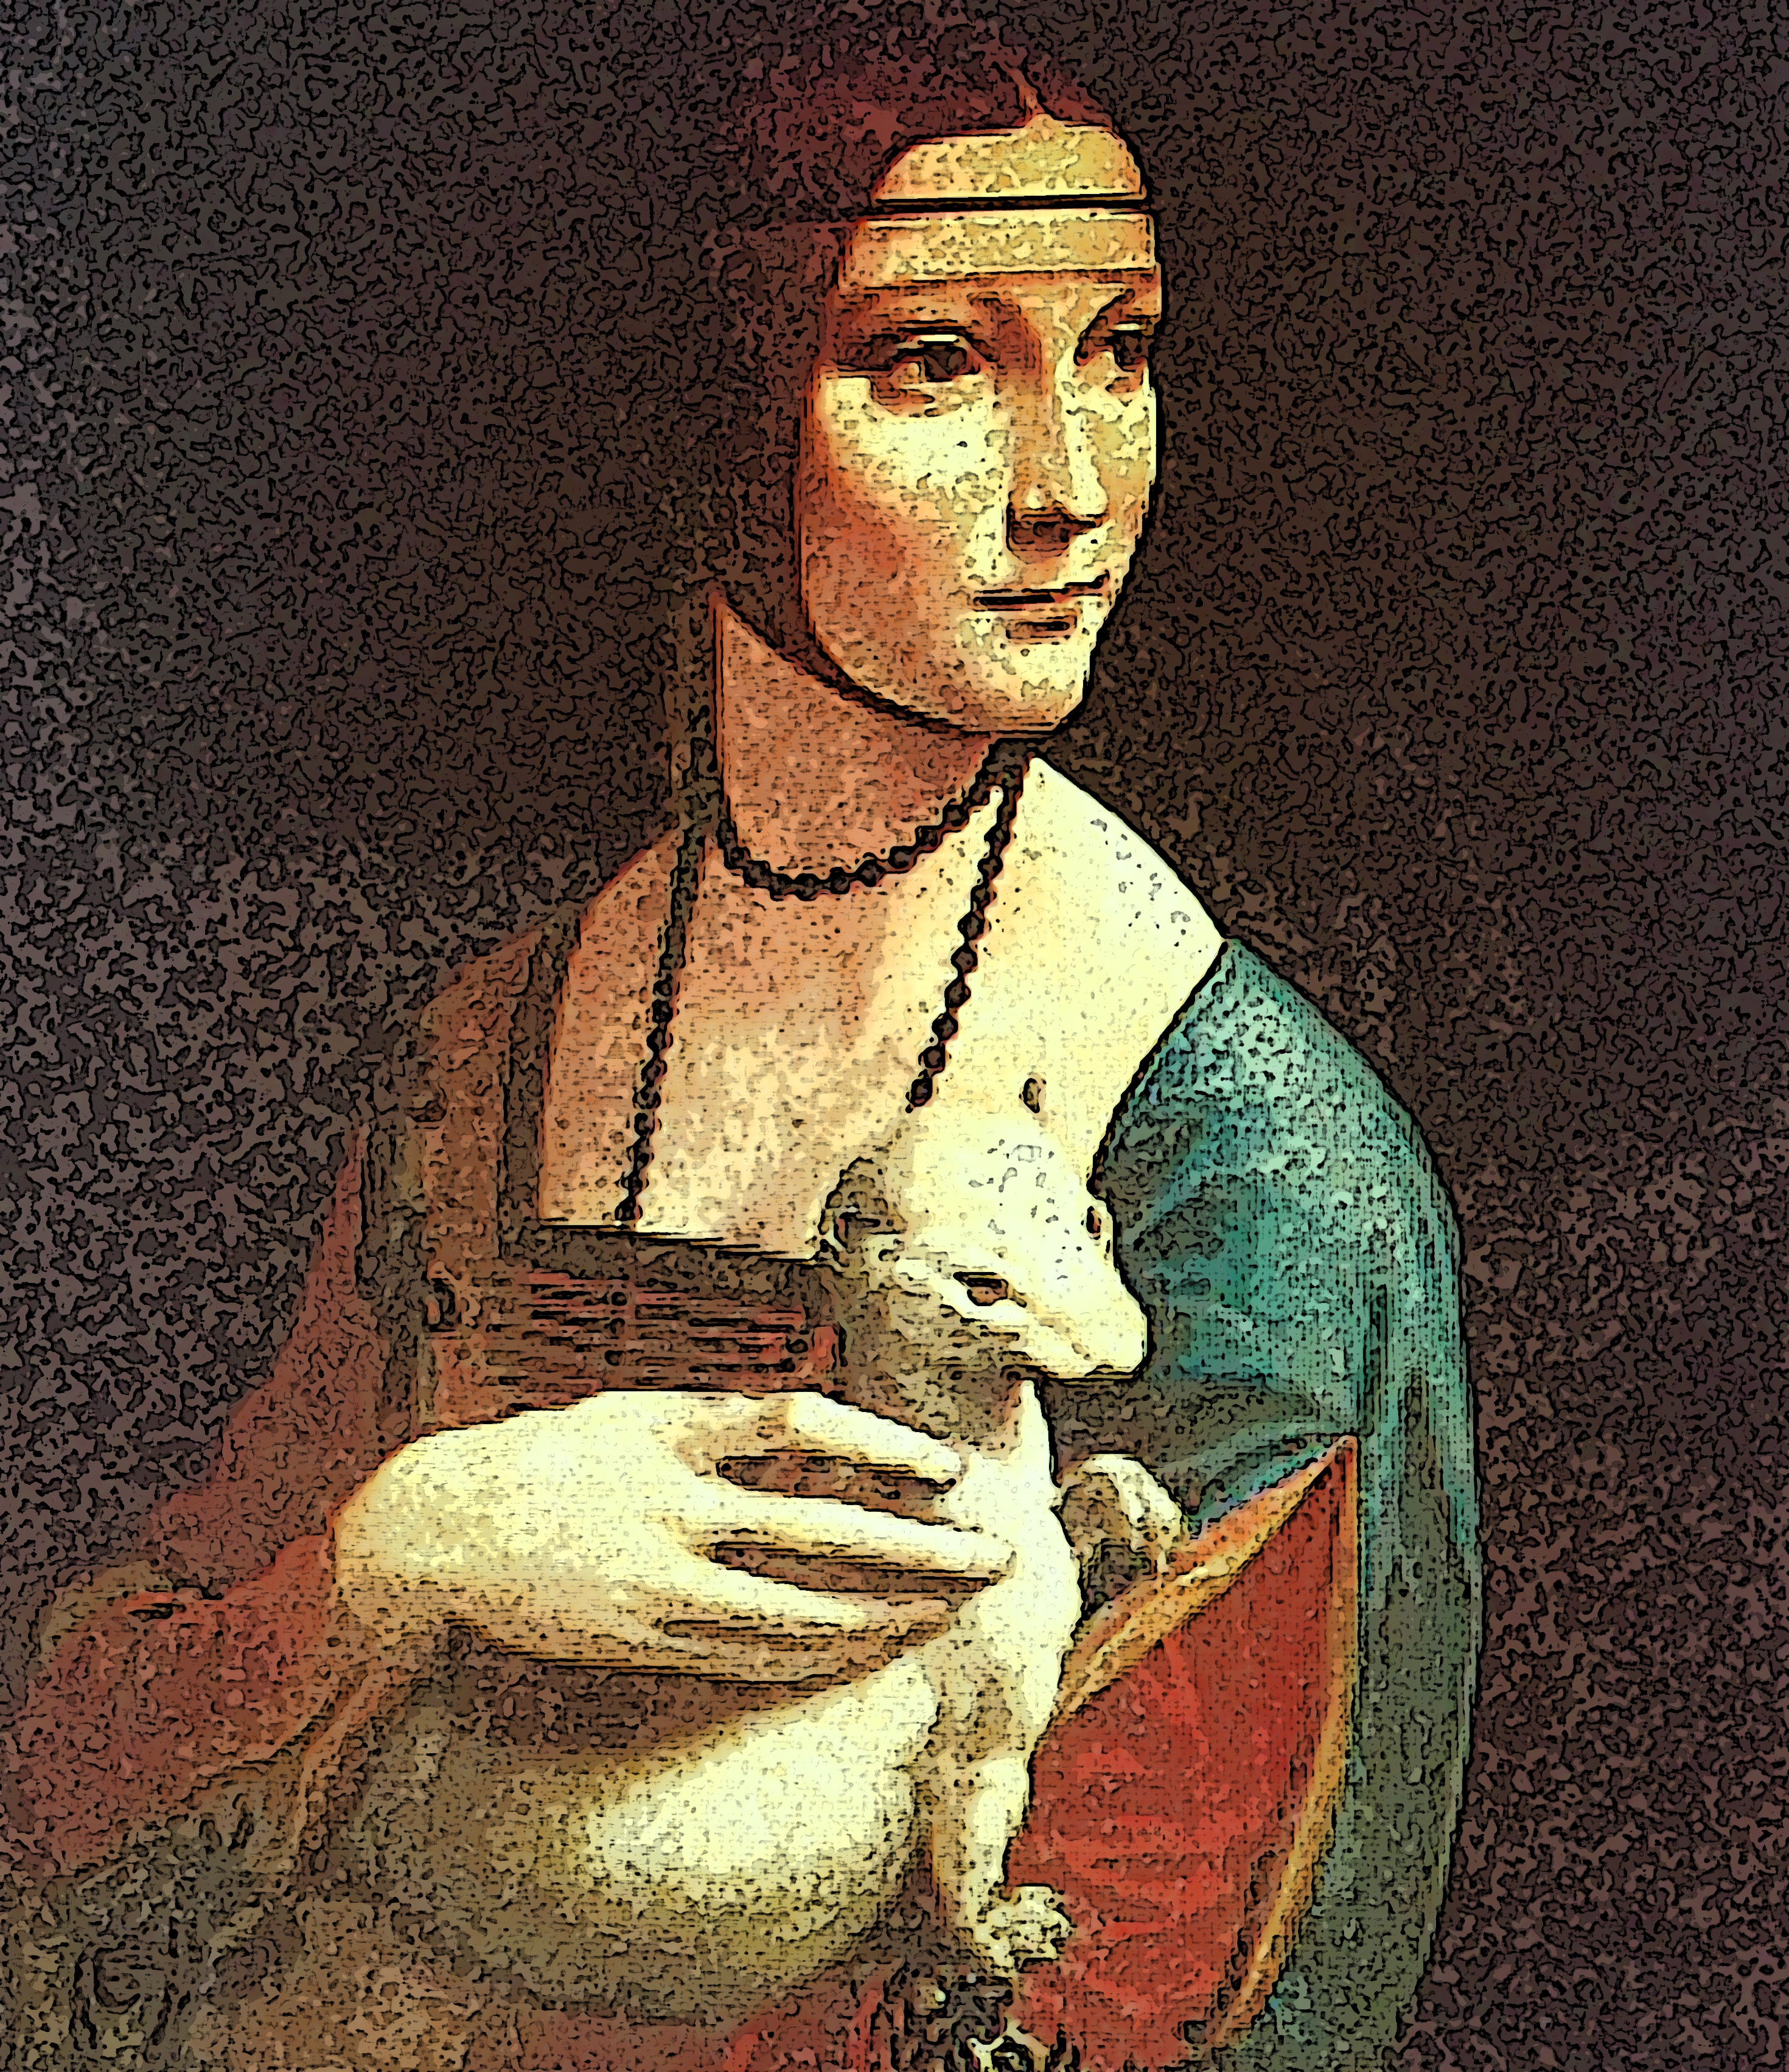 Immagine di 'La dama con l'ermellino' (Per leggerne la descrizione proseguire nel link). Ravvicinata sulla dama con l'ermellino in grembo.